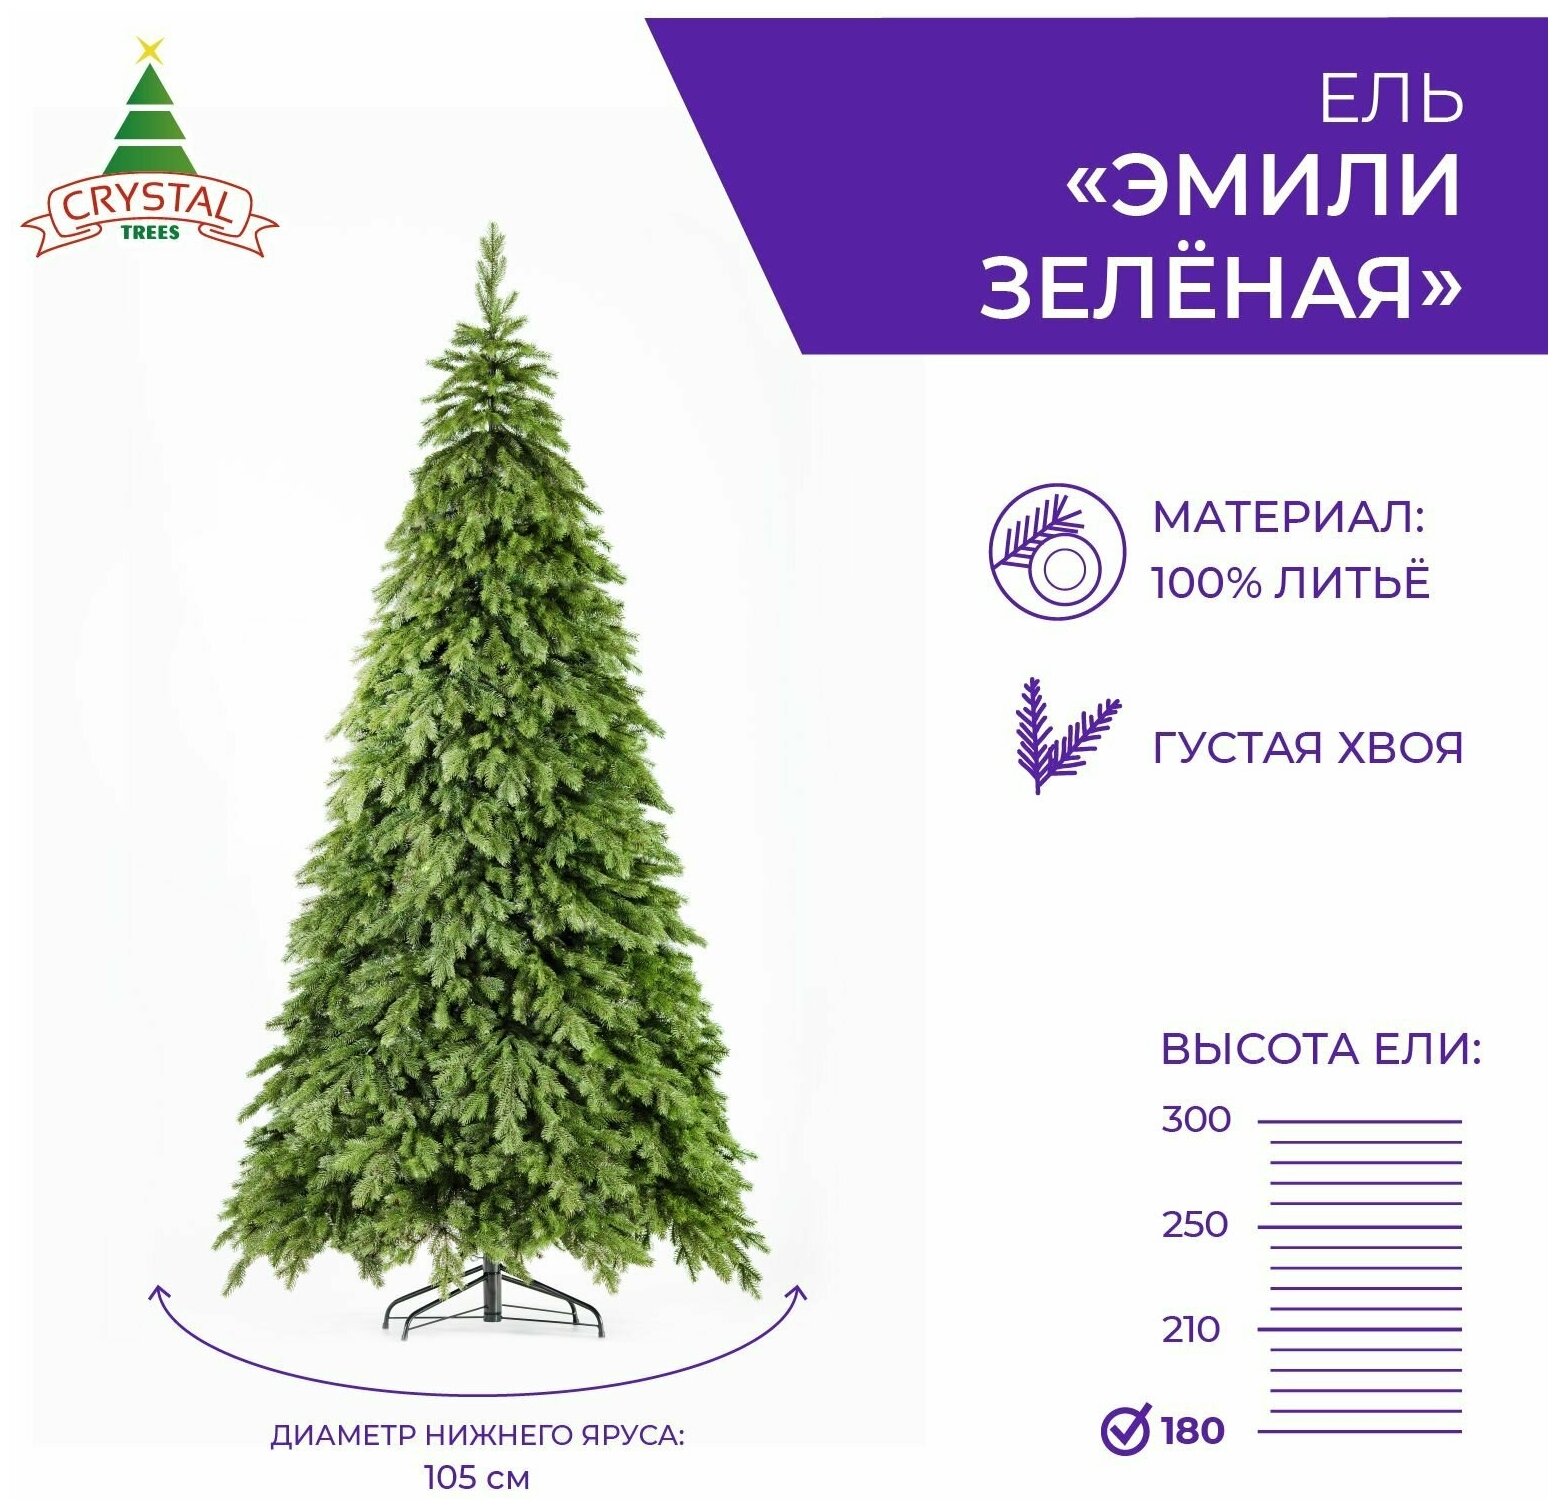 Искусственная елка новогодняя Литая Crystal Trees эмили зеленая ,высота 180 см